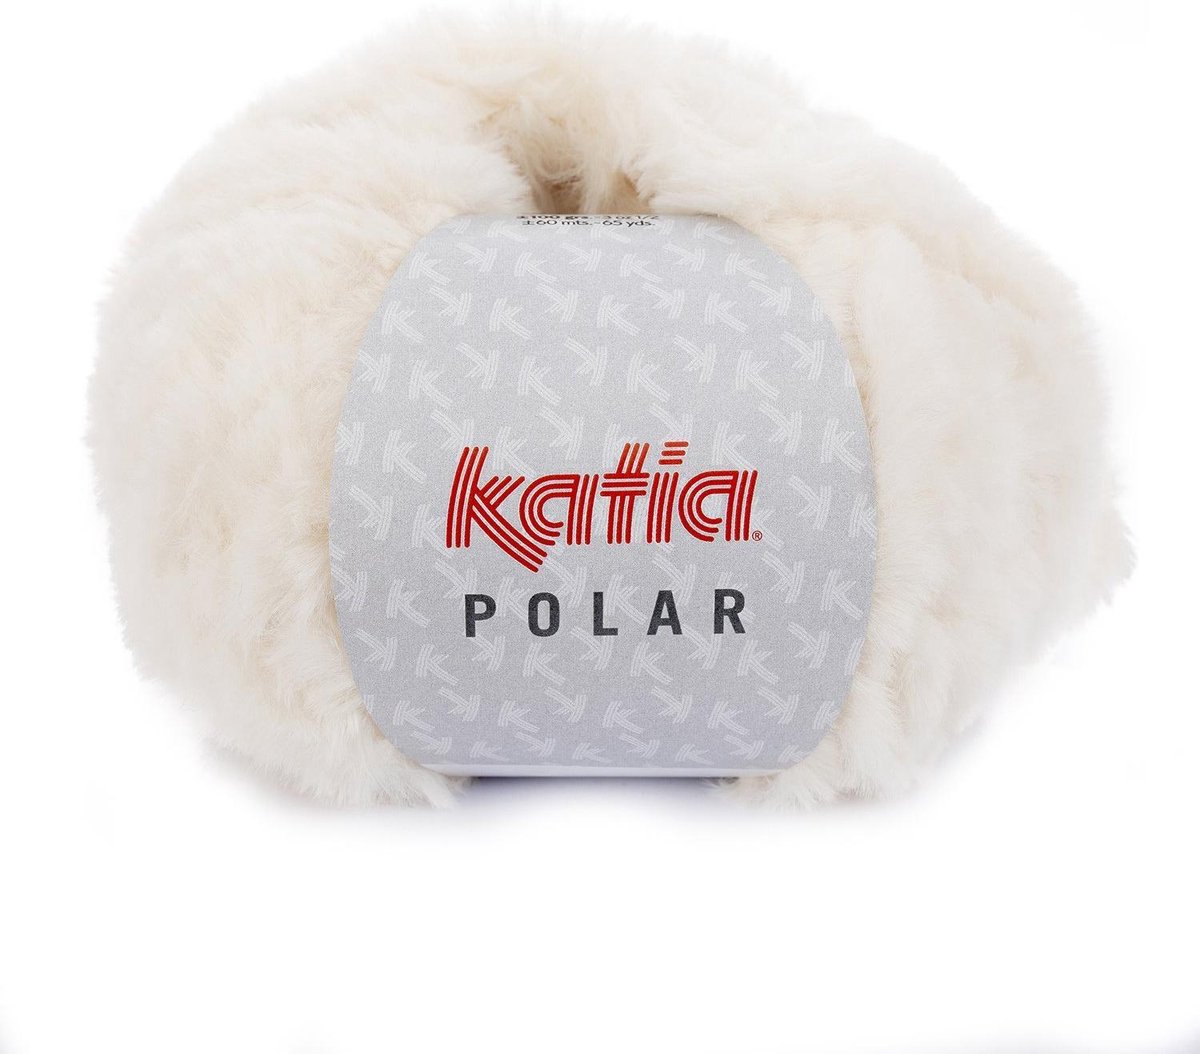 Polar Garen Katia Ecru + gratis patroon sjaal en kraag - pluche - haakgaren - breigaren - breien - deken breien - deken haken - haken - haken voor interieur - haken voor baby - superzacht - fluweel - velvet - velvet wol - fluwelen - garen - breiwol